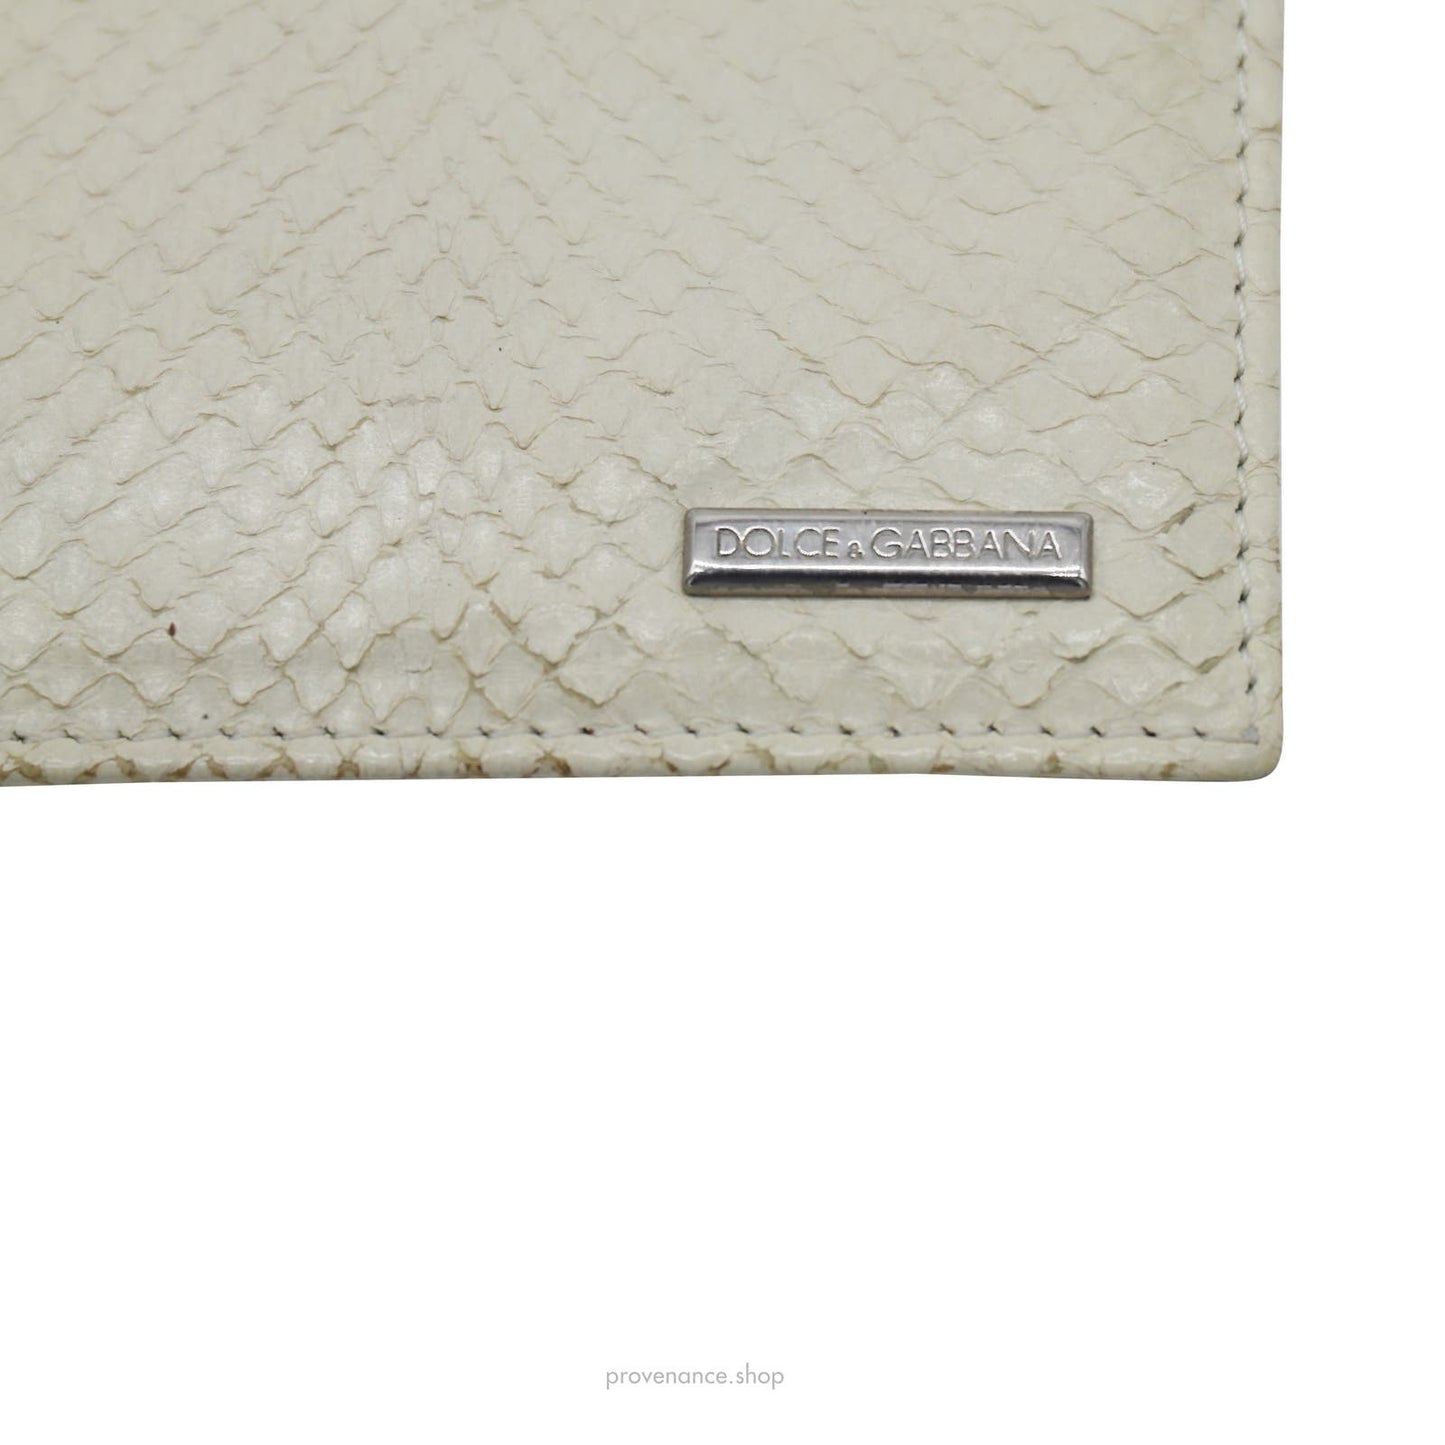 🔴 Dolce & Gabbana Cream Python Card Holder Wallet - Cream